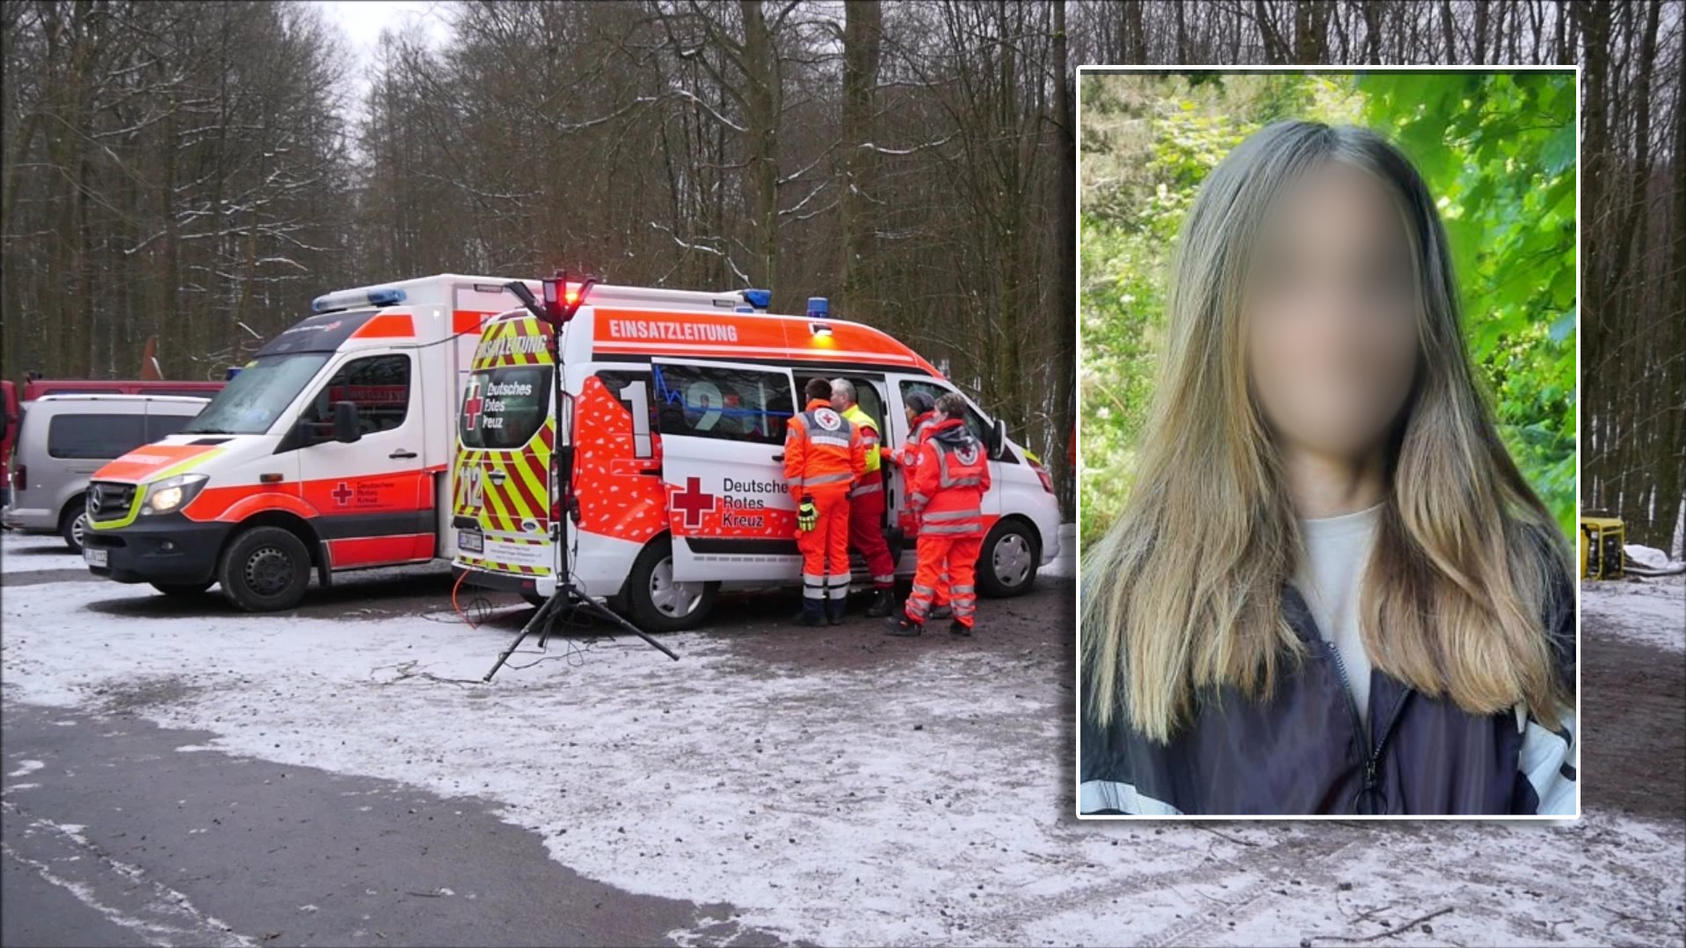 Einsatzkräfte in der Nähe des Fundsorts der Leiche, die am Samstagmittag in Freudingen gefunden wurde. / Verpixeltes Foto der vermissten Schülerin Luise F. (12)